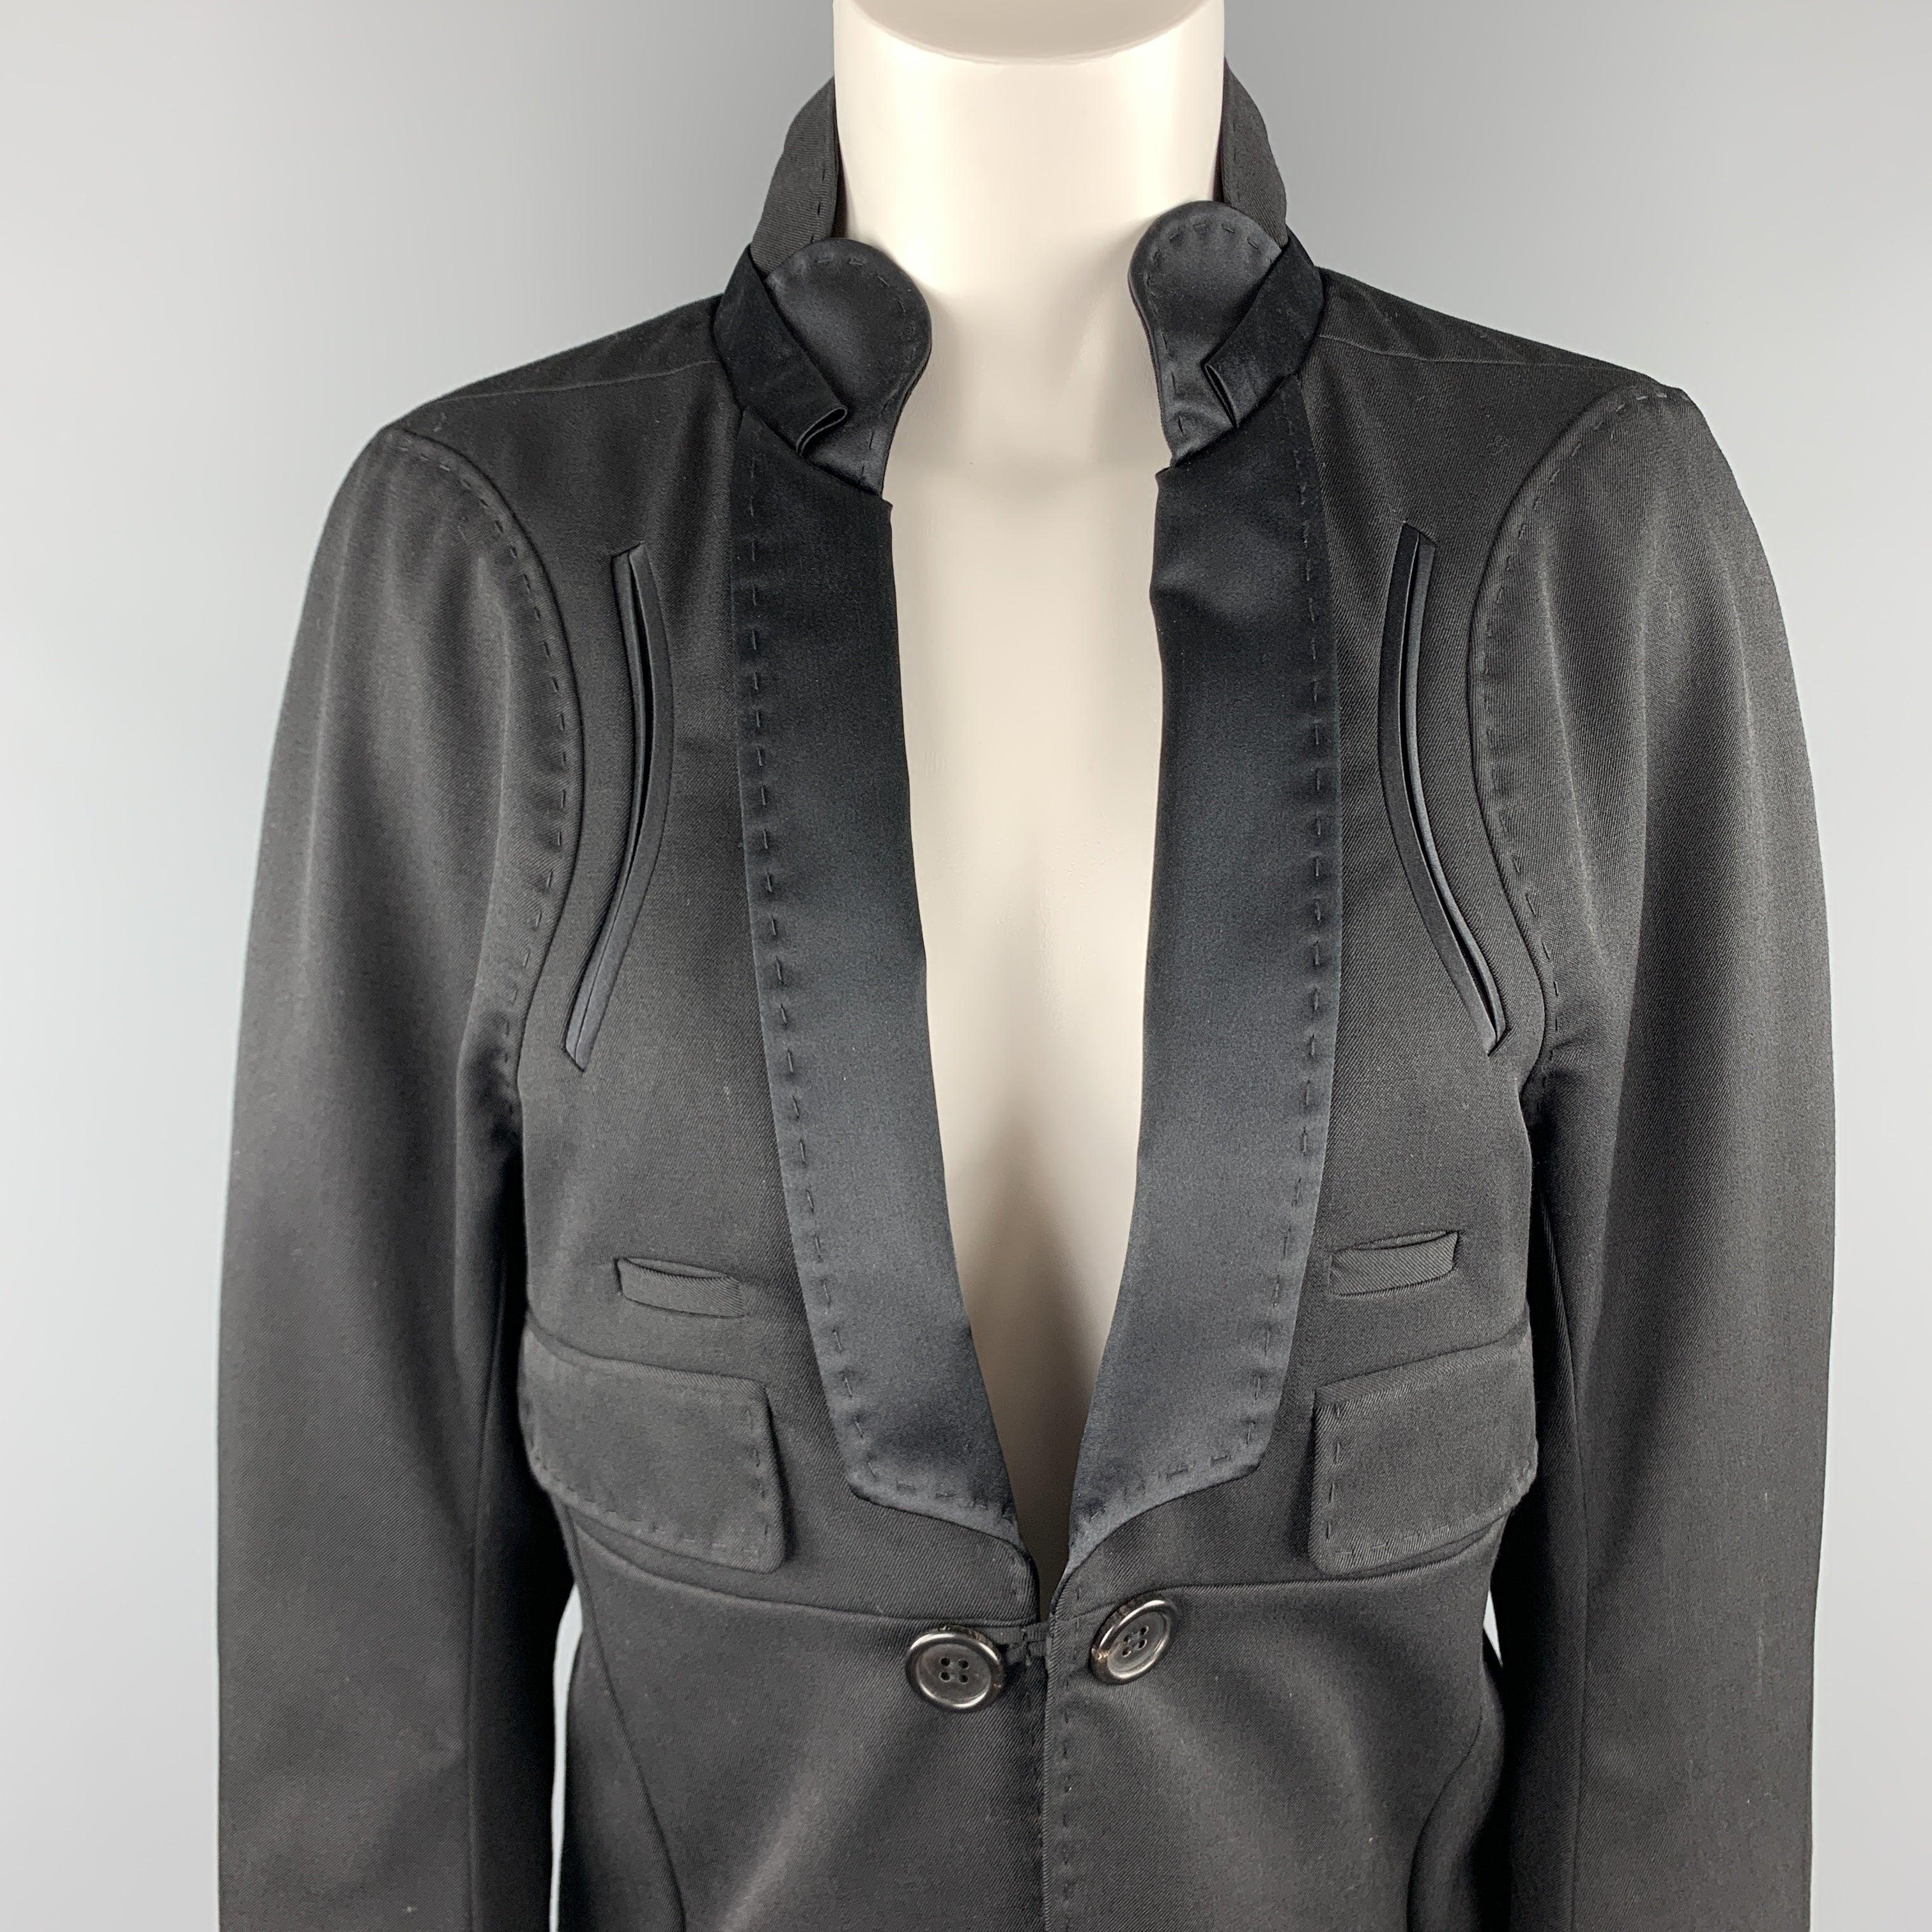 Le manteau de style smoking UNDERCOVER est en laine noire et présente un devant à un seul bouton, un col montant au dos avec revers châle en satin, des détails de poches et une ligne d'ourlet de type queue de manteau. Fabriqué au Japon.
Etat